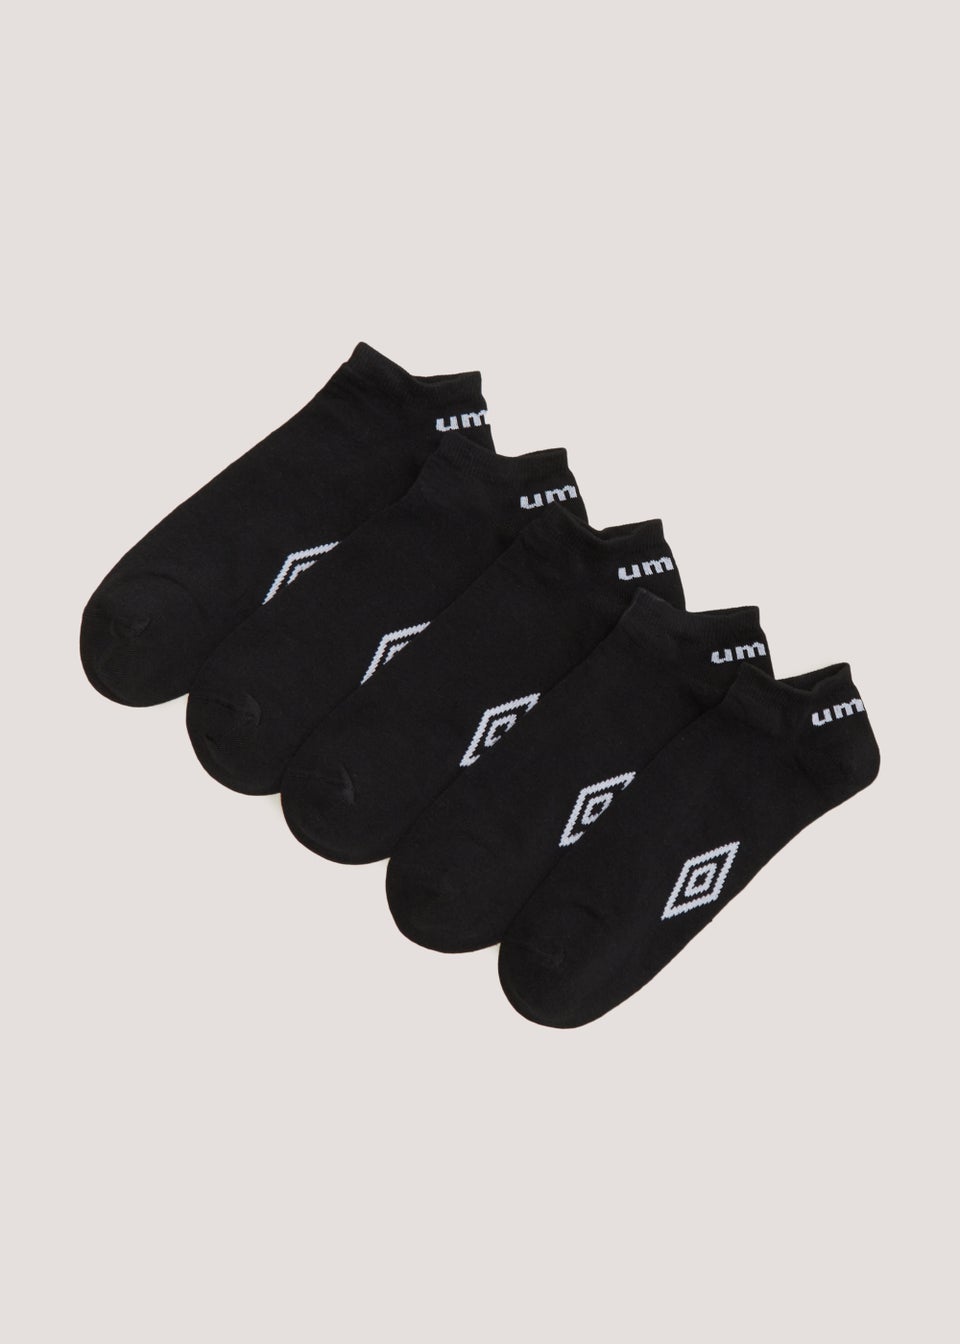 Umbro 5 Pack Black Trainer Socks